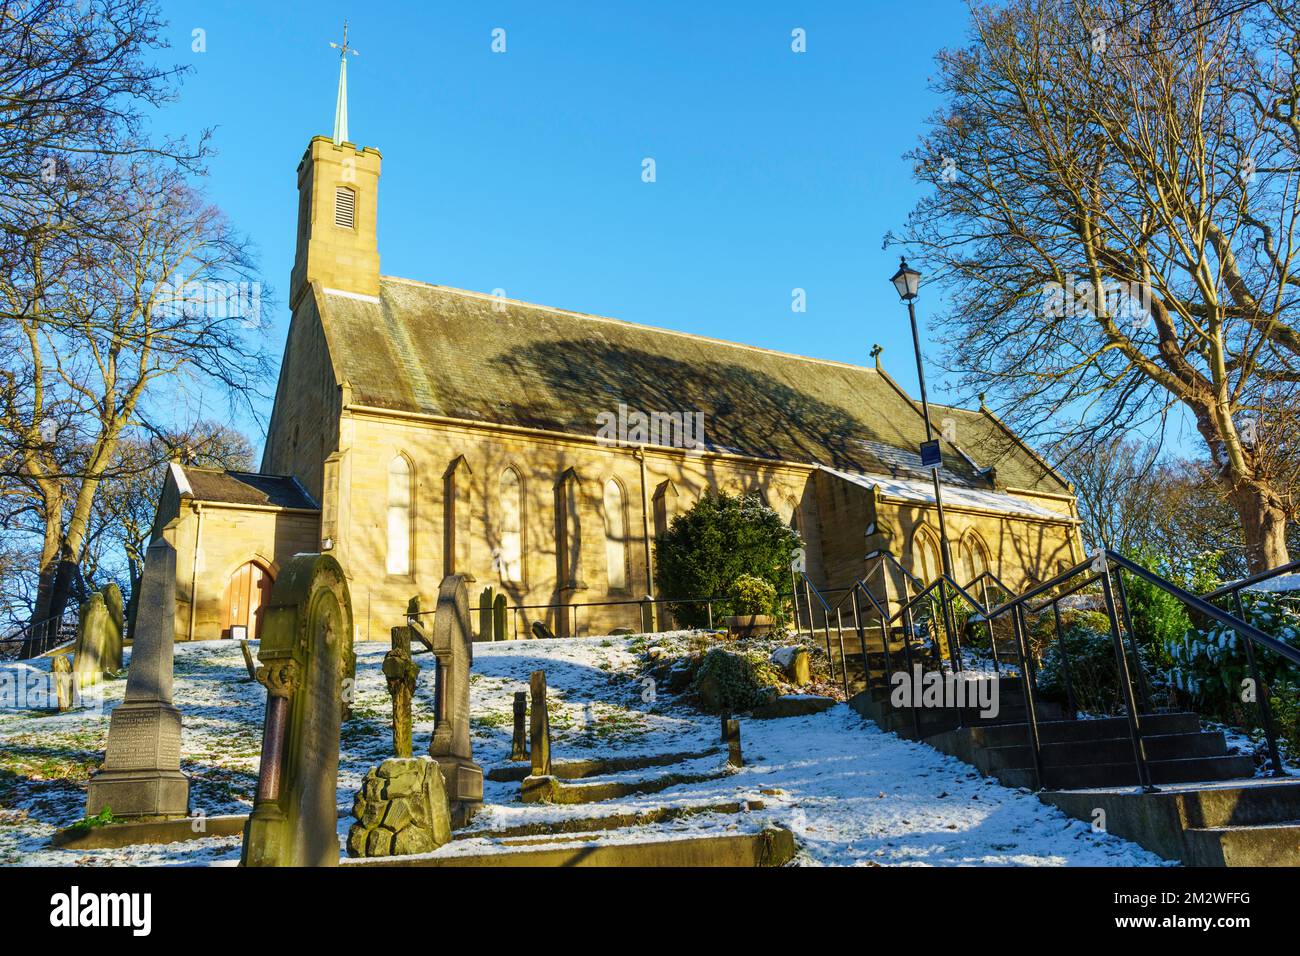 Vue d'hiver de l'église sur la colline dans le village de Washington, nord-est de l'Angleterre, Royaume-Uni Banque D'Images